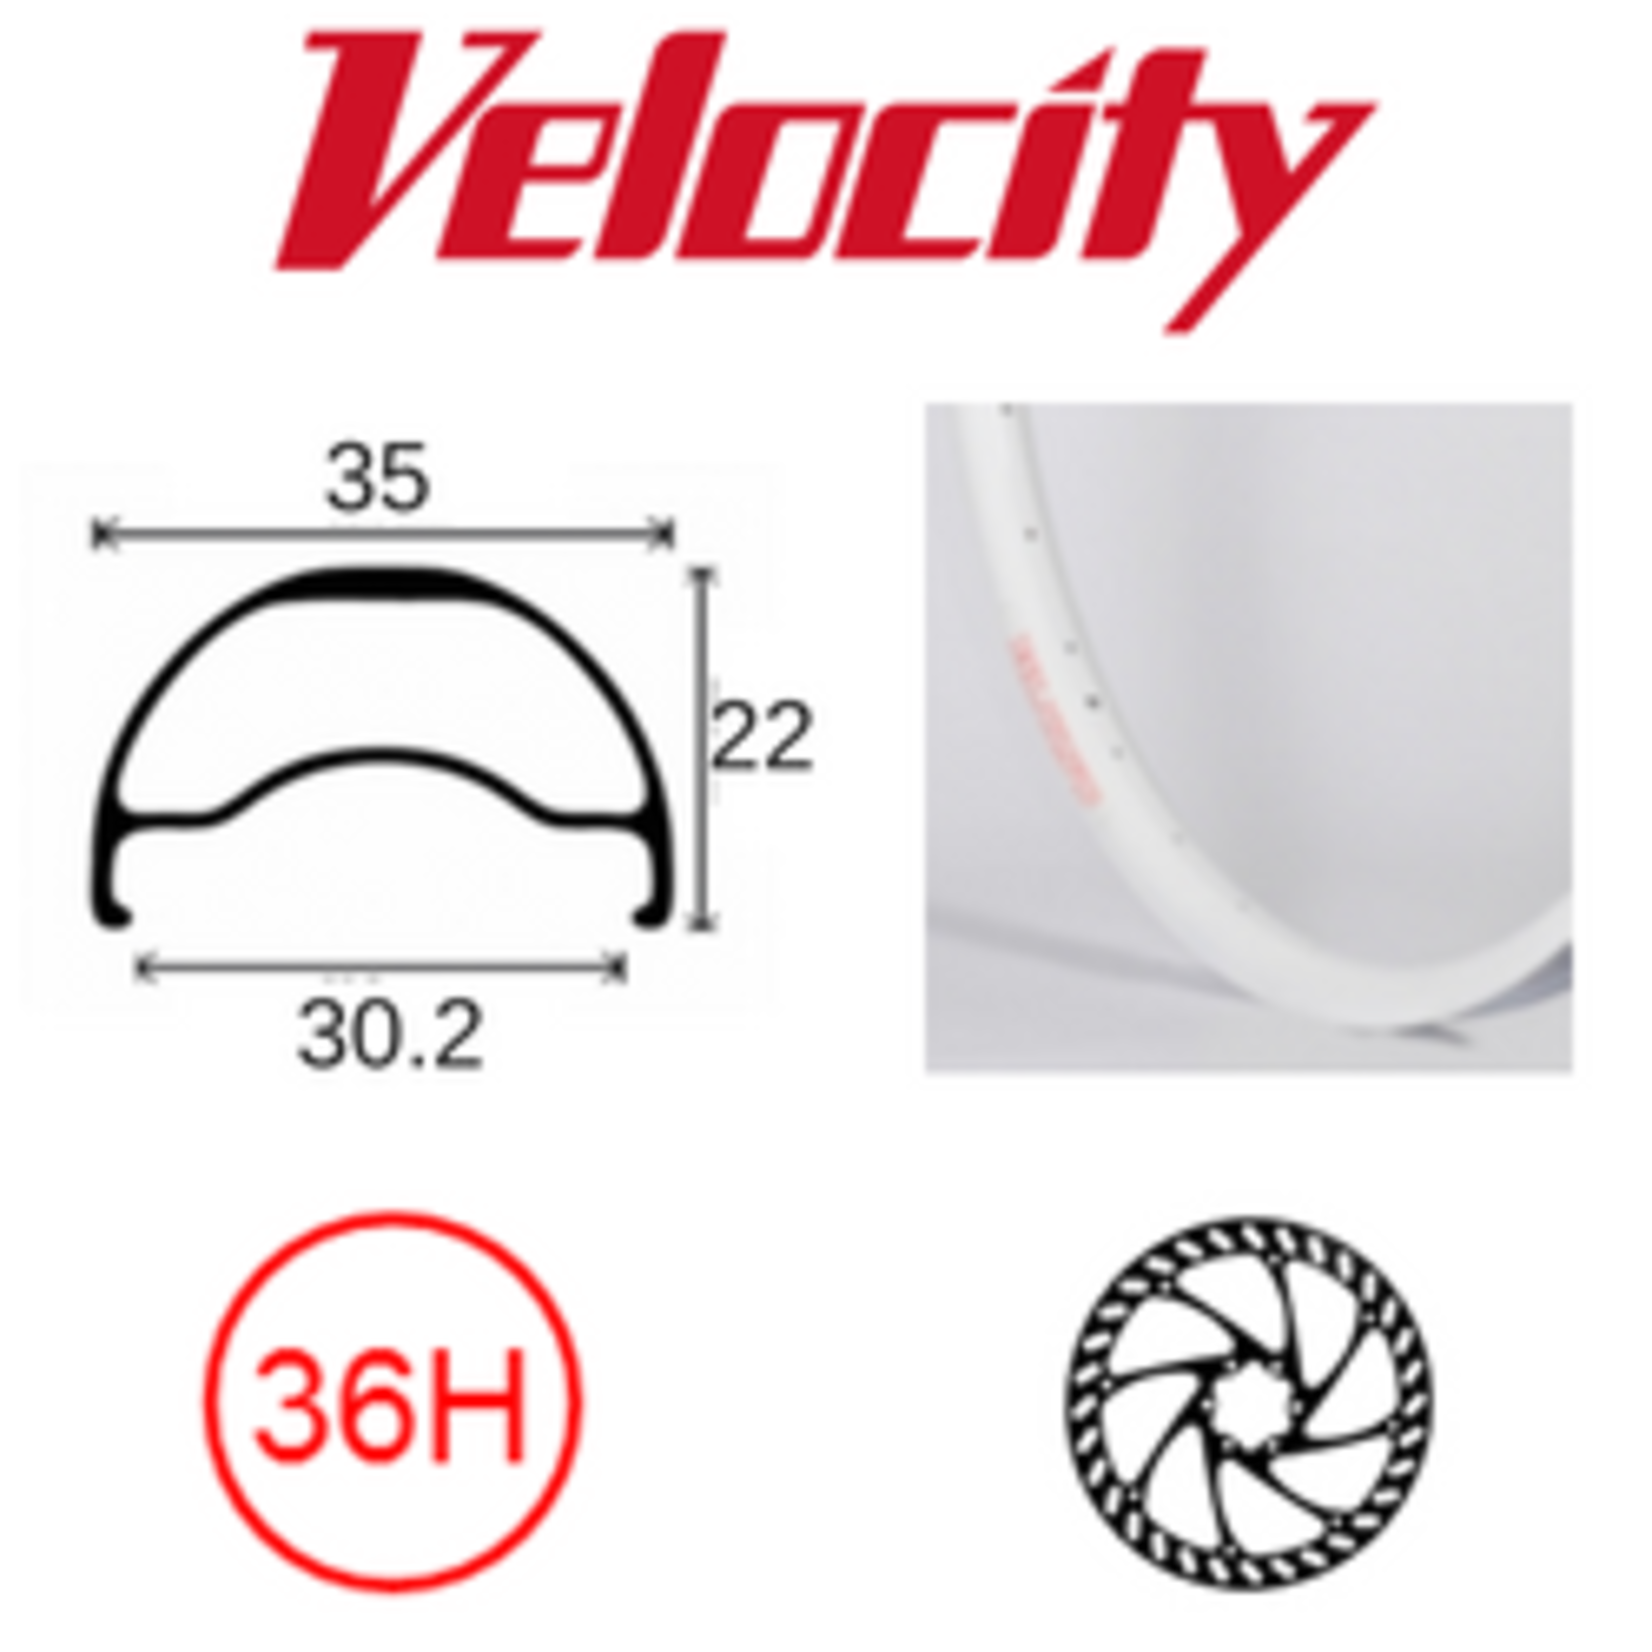 velocity Velocity Rim - Blunt 35- 700C(622) 36H - Presta Valve - Disc Brake - D/W - White